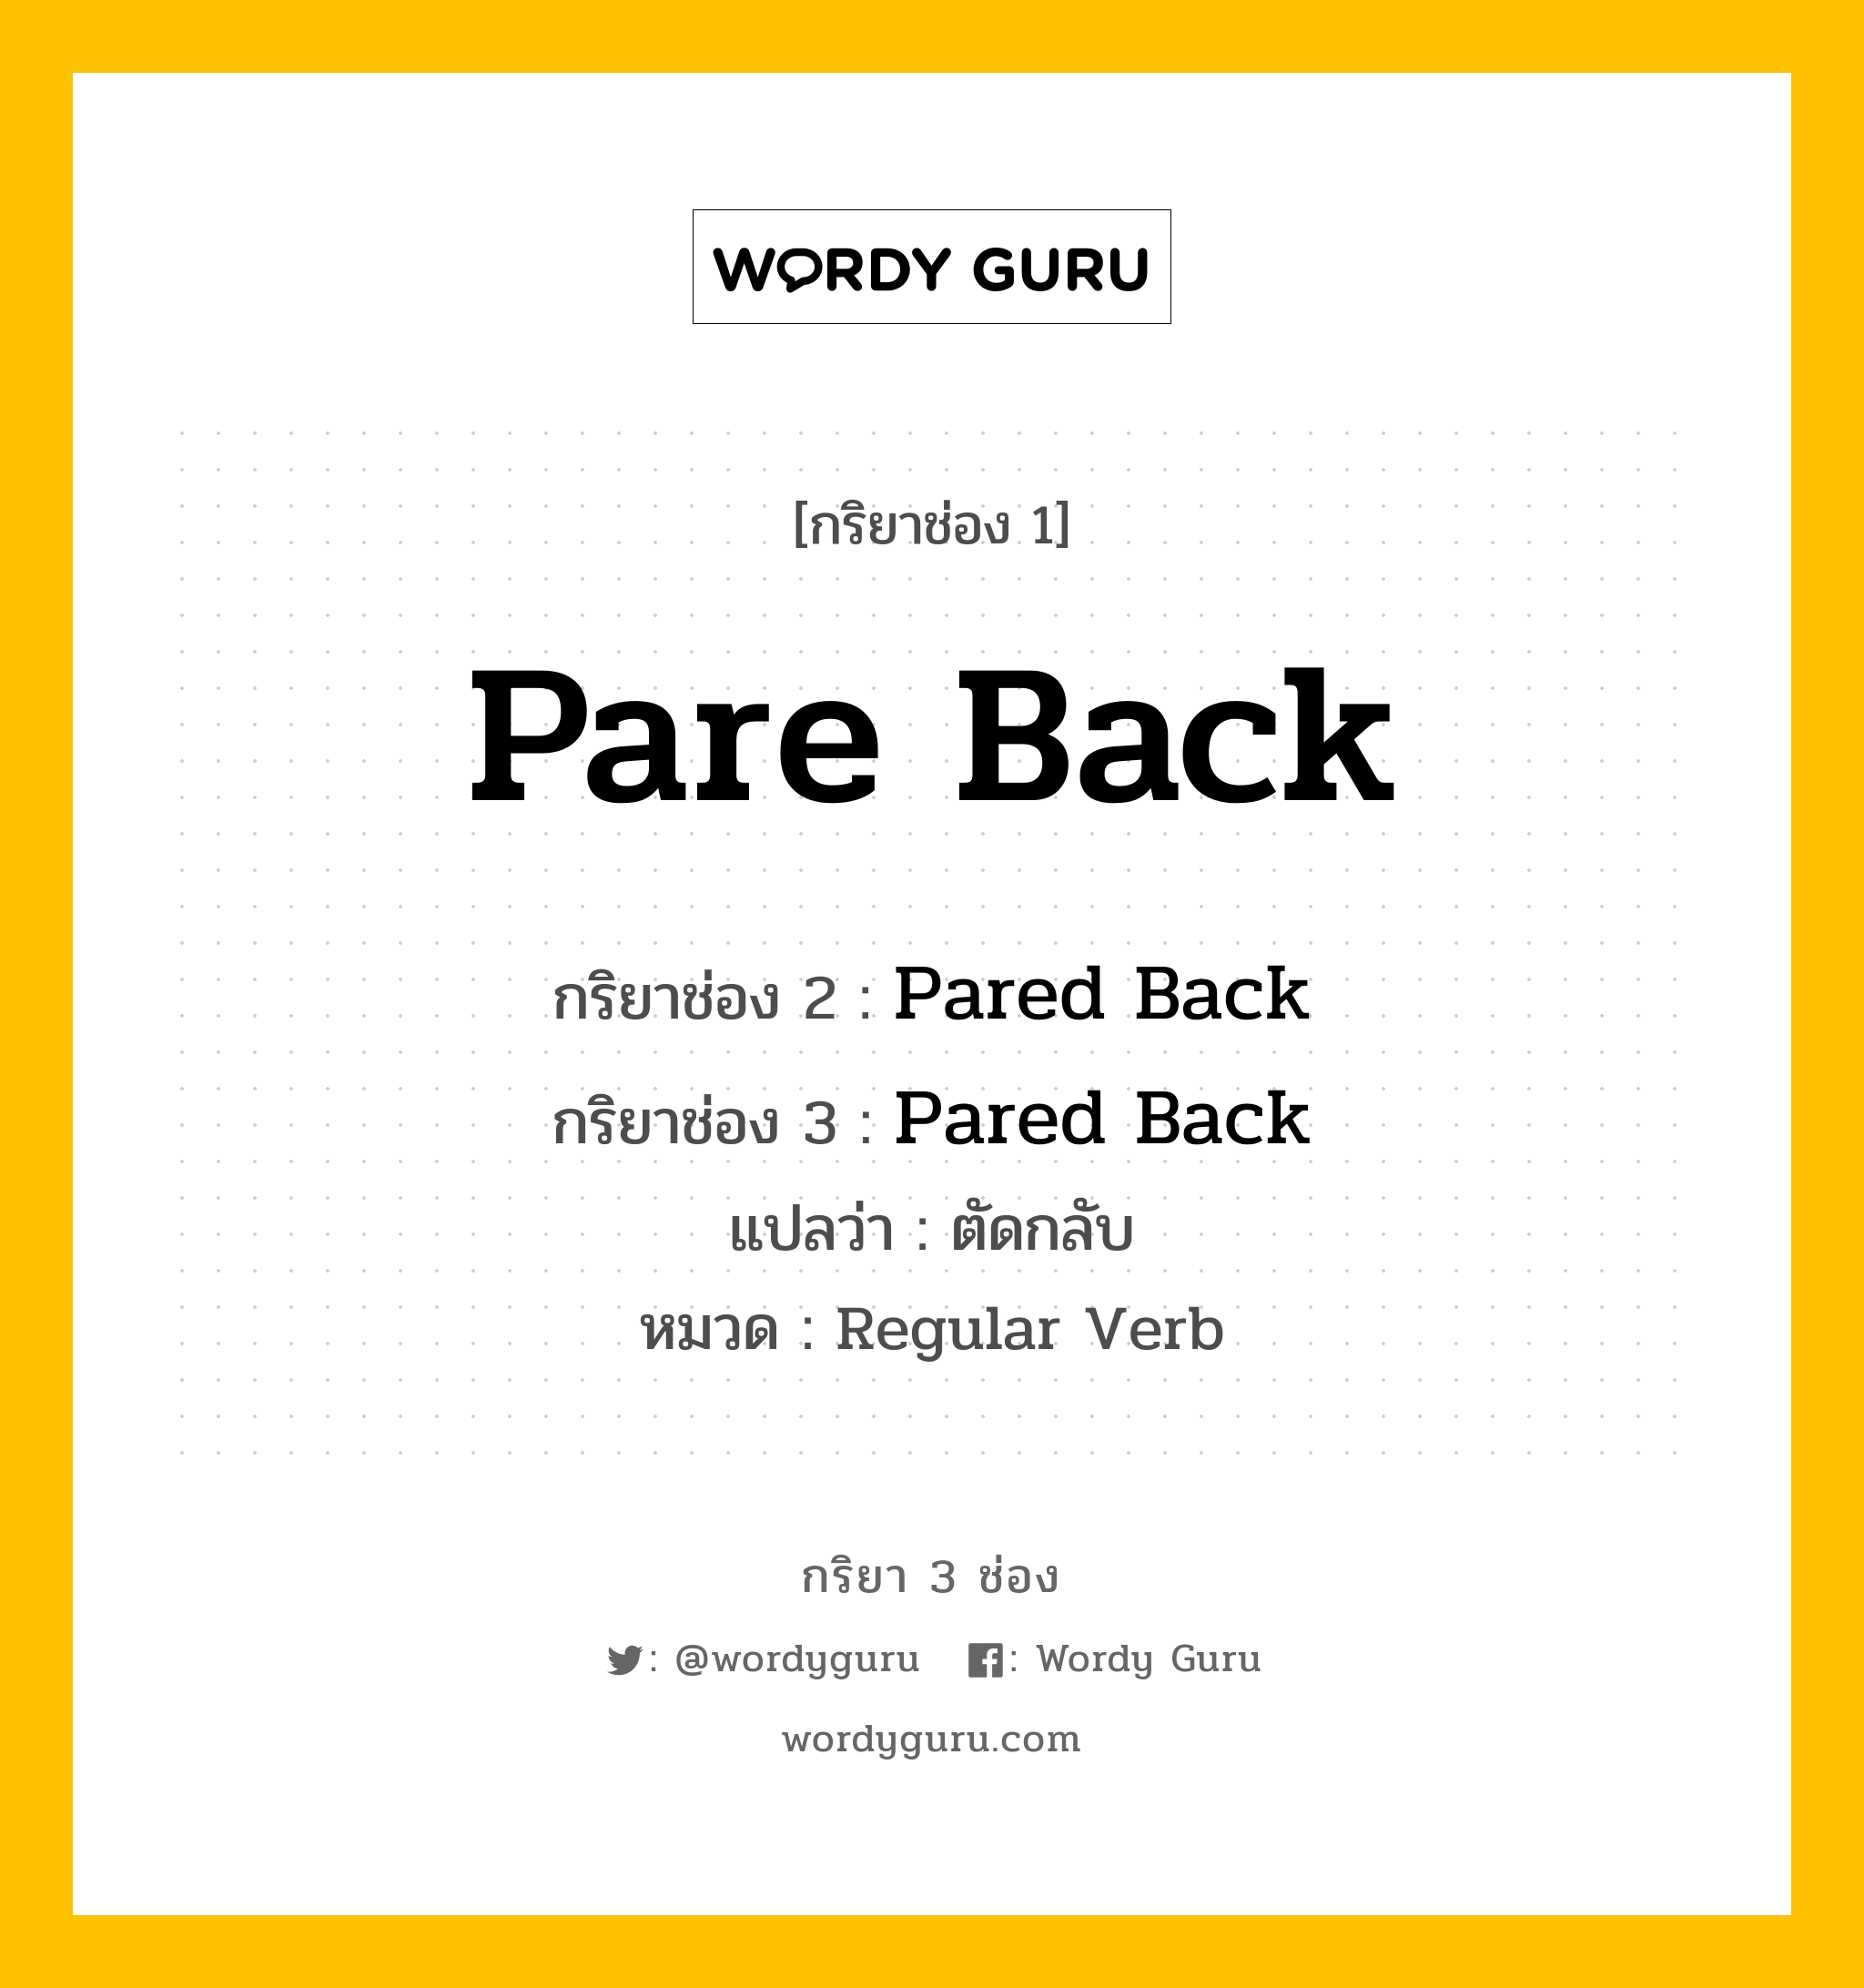 กริยา 3 ช่อง ของ Pare Back คืออะไร? มาดูคำอ่าน คำแปลกันเลย, กริยาช่อง 1 Pare Back กริยาช่อง 2 Pared Back กริยาช่อง 3 Pared Back แปลว่า ตัดกลับ หมวด Regular Verb หมวด Regular Verb